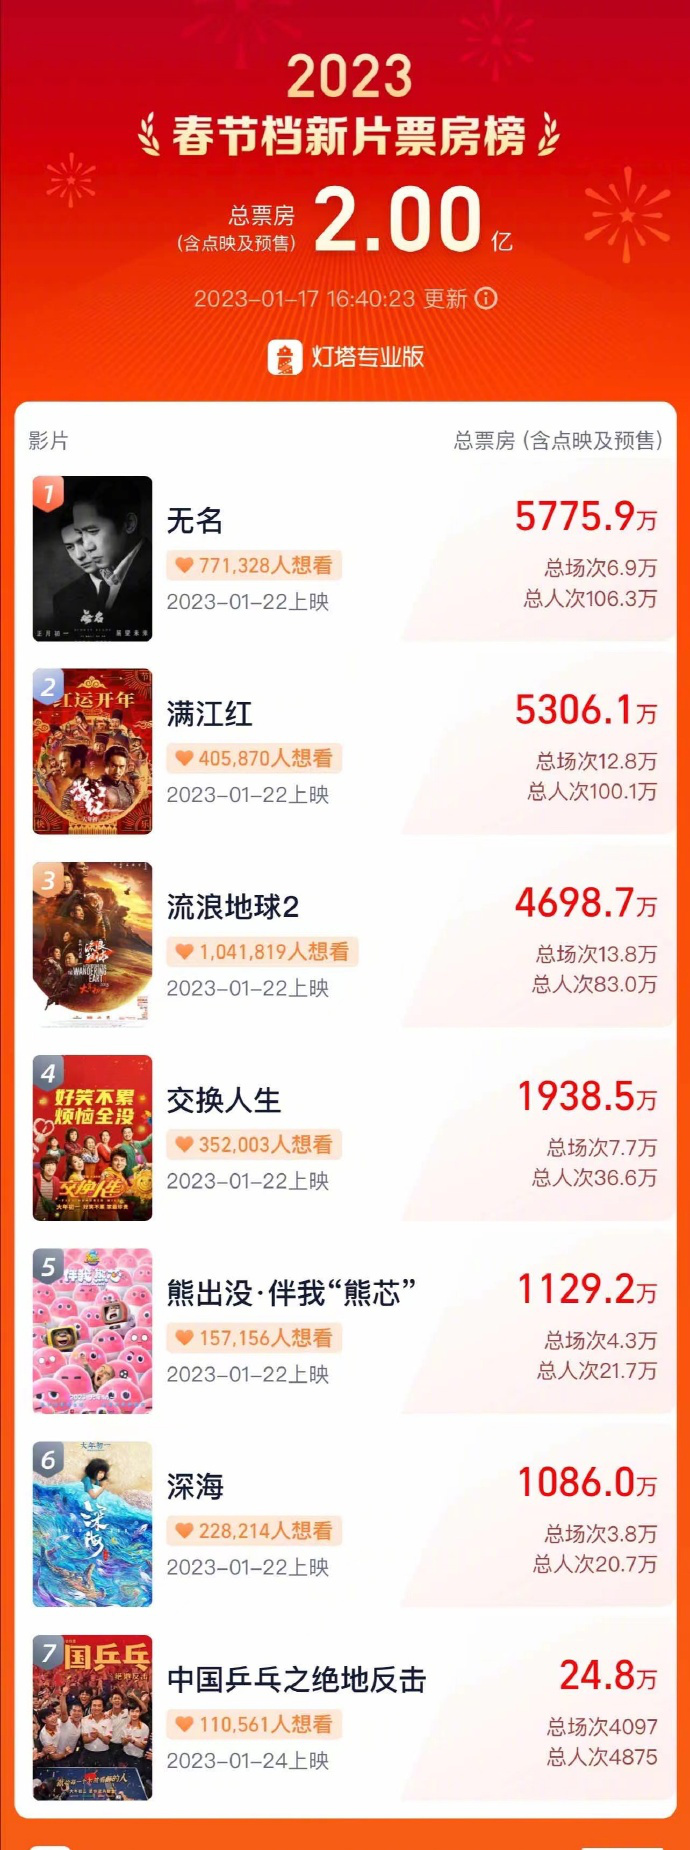 春节档预售票房破2亿 《无名》《满江红》领跑